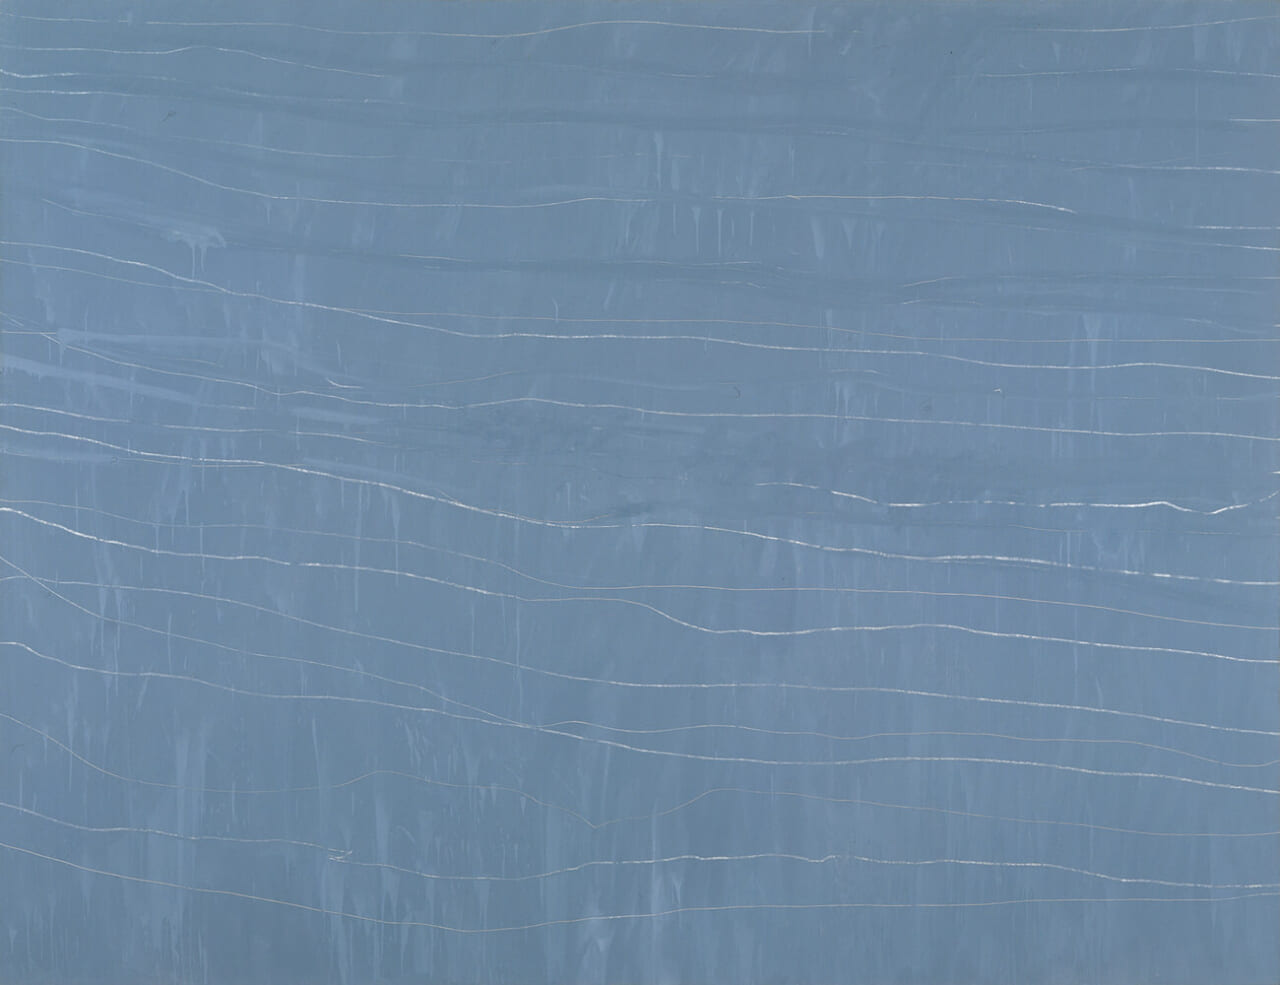 サイ・トゥオンブリー《無題》1968年　家庭用塗料、クレヨン、カンヴァス　200 × 259cm
© Cy Twombly Foundation